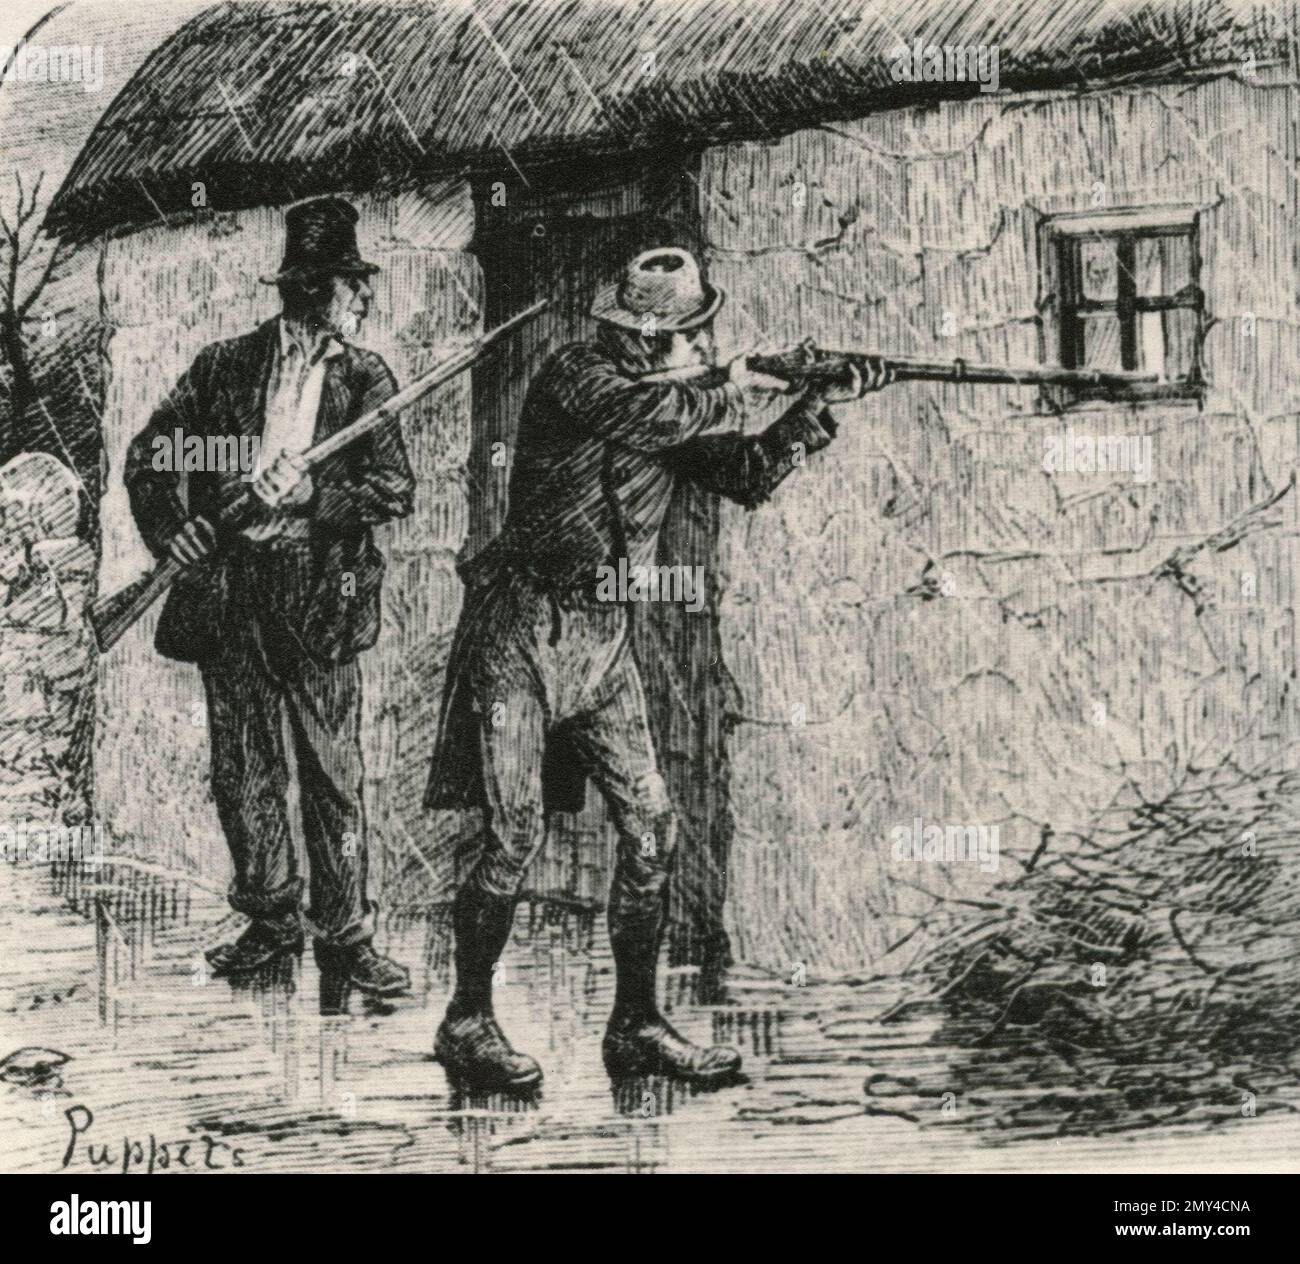 Immagini simpatiche per i proprietari terrieri contro la Lega irlandese, Irlanda 1890s, illustrazione Foto Stock